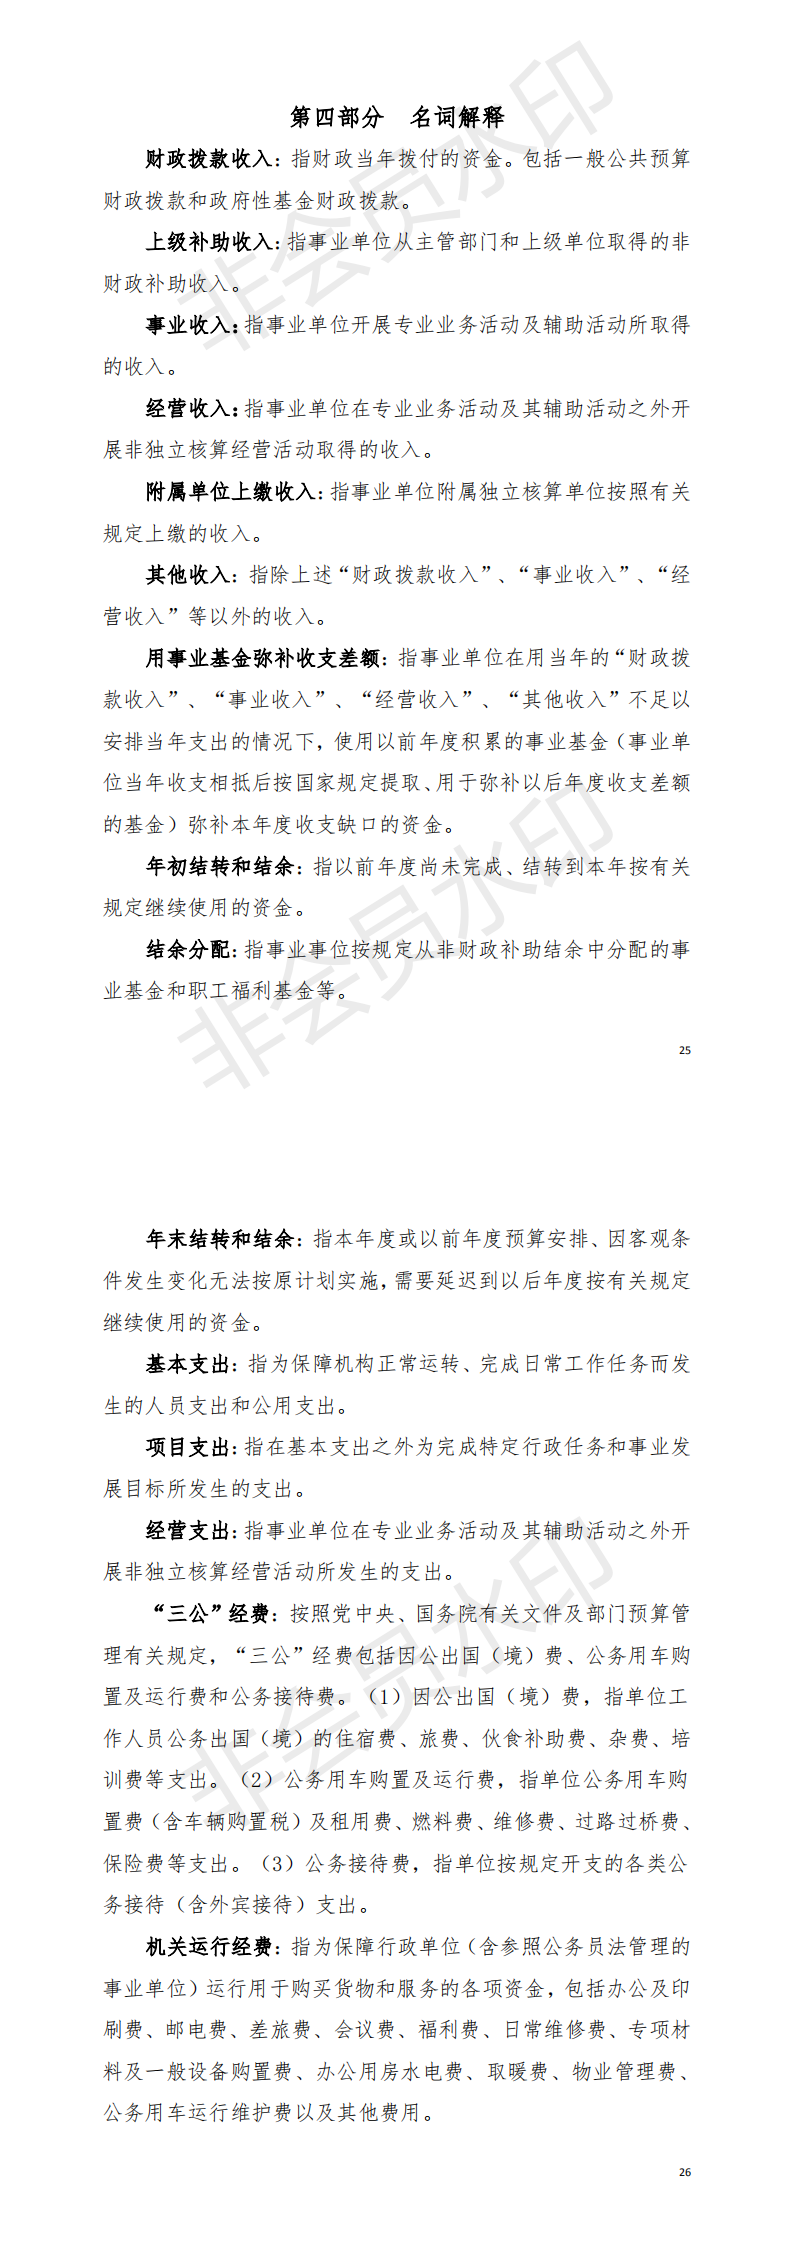 2018年阳江高新技术产业开发区教育文化体育局部门决算_1.png